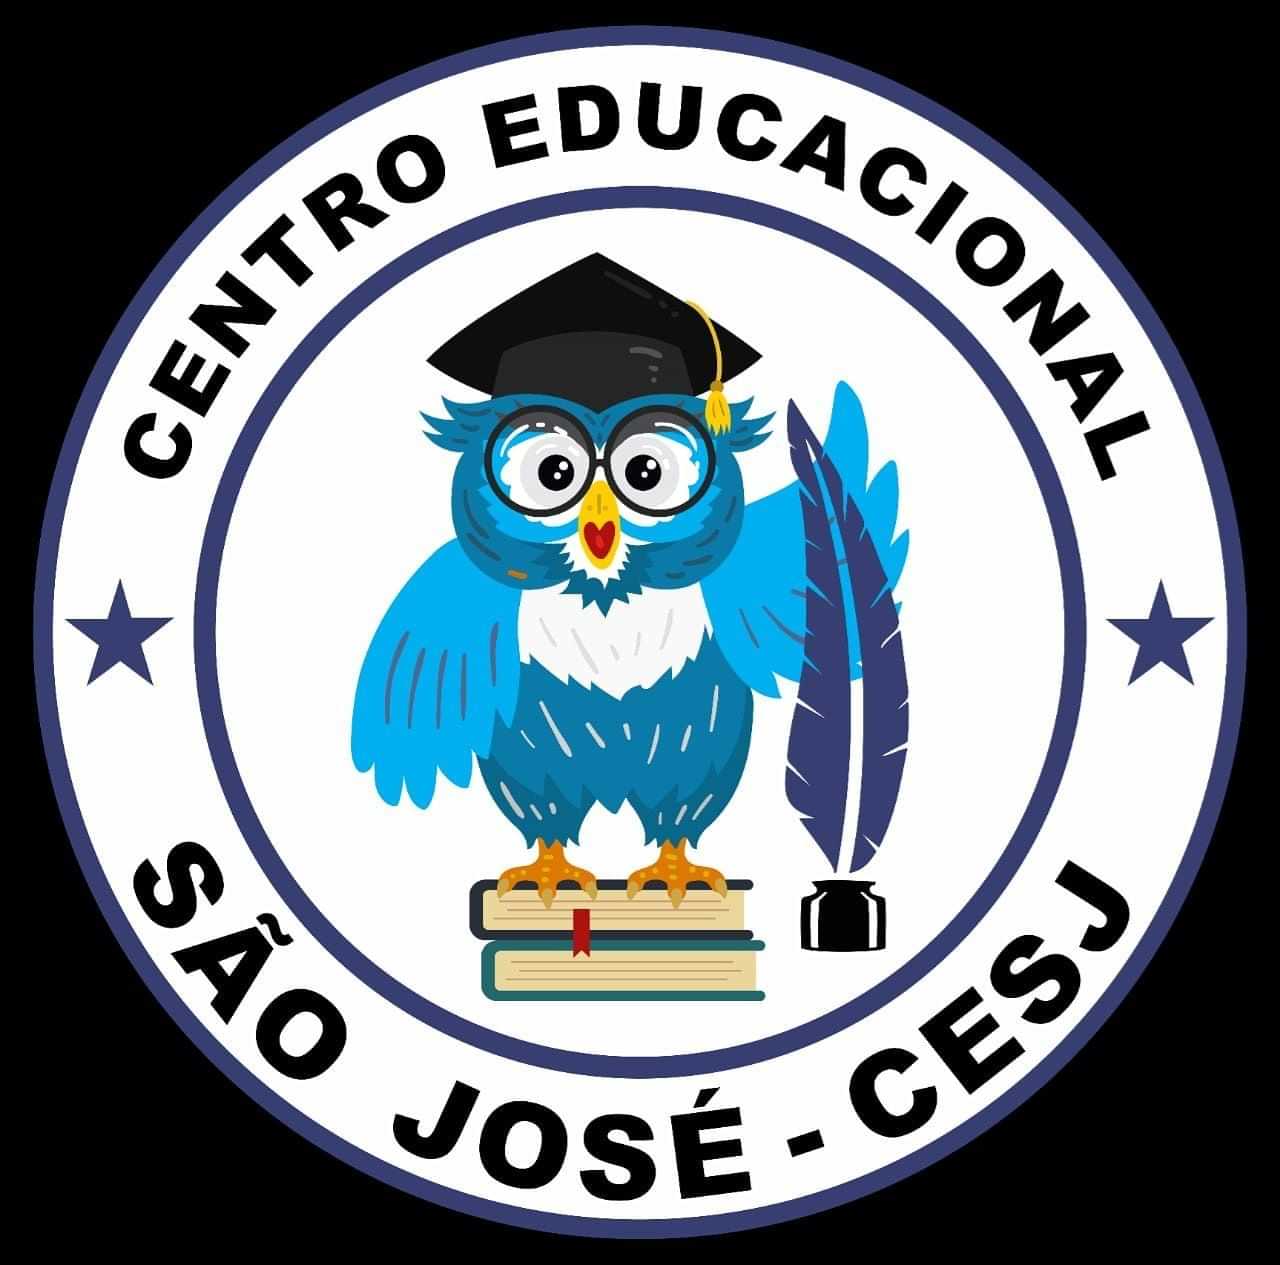  Centro Educacional São José 